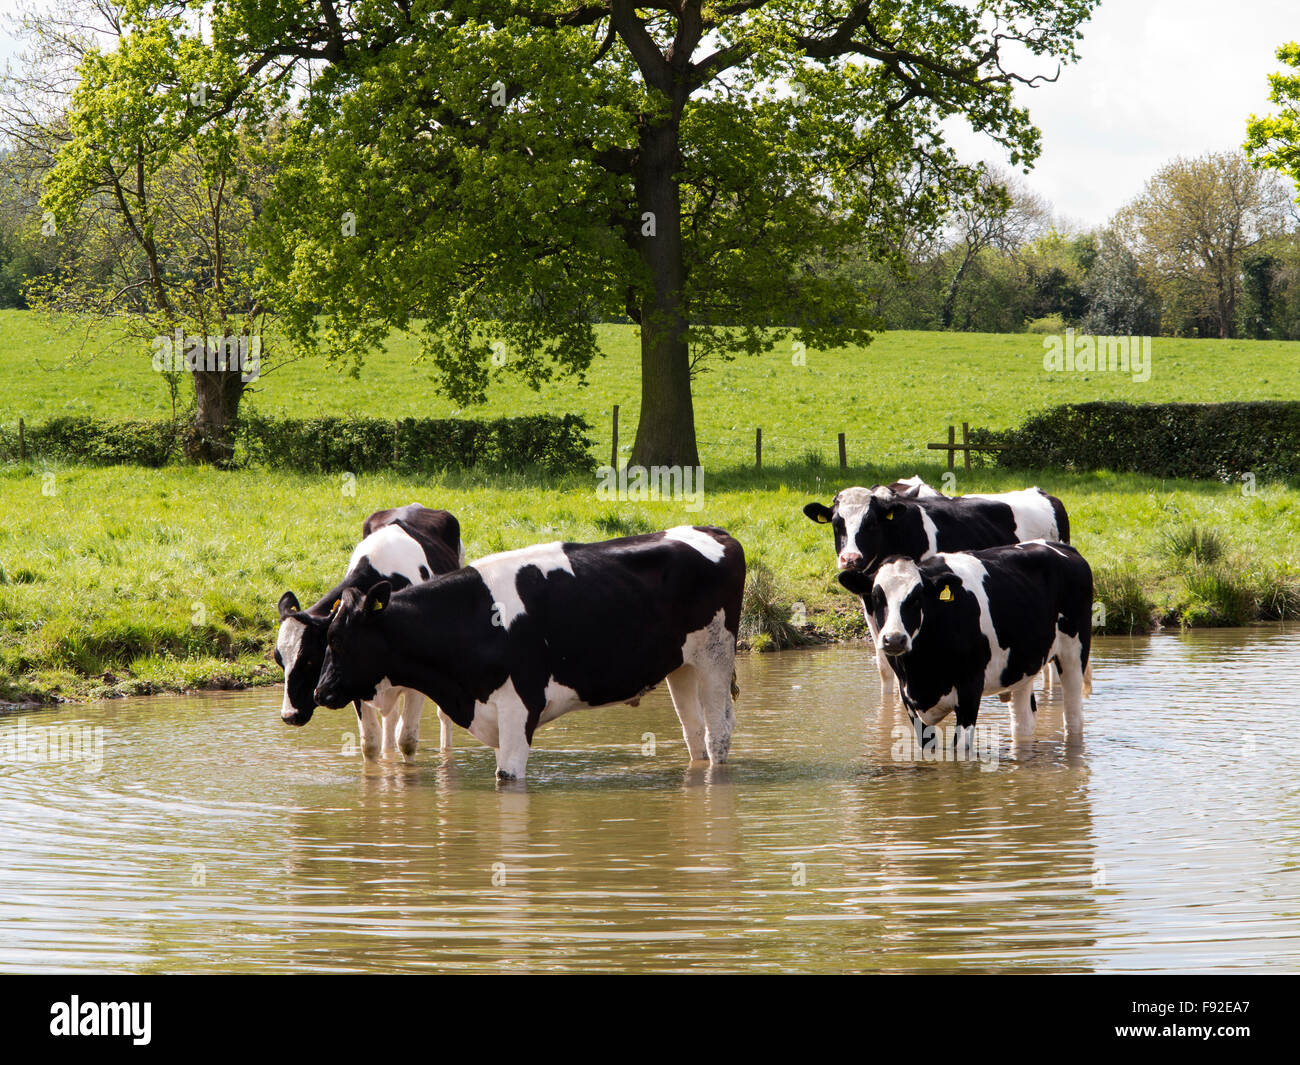 Royaume-uni, Angleterre, Cheshire, Astbury, bovins laitiers Fresian refroidissement du Canal Macclesfield par temps chaud Banque D'Images